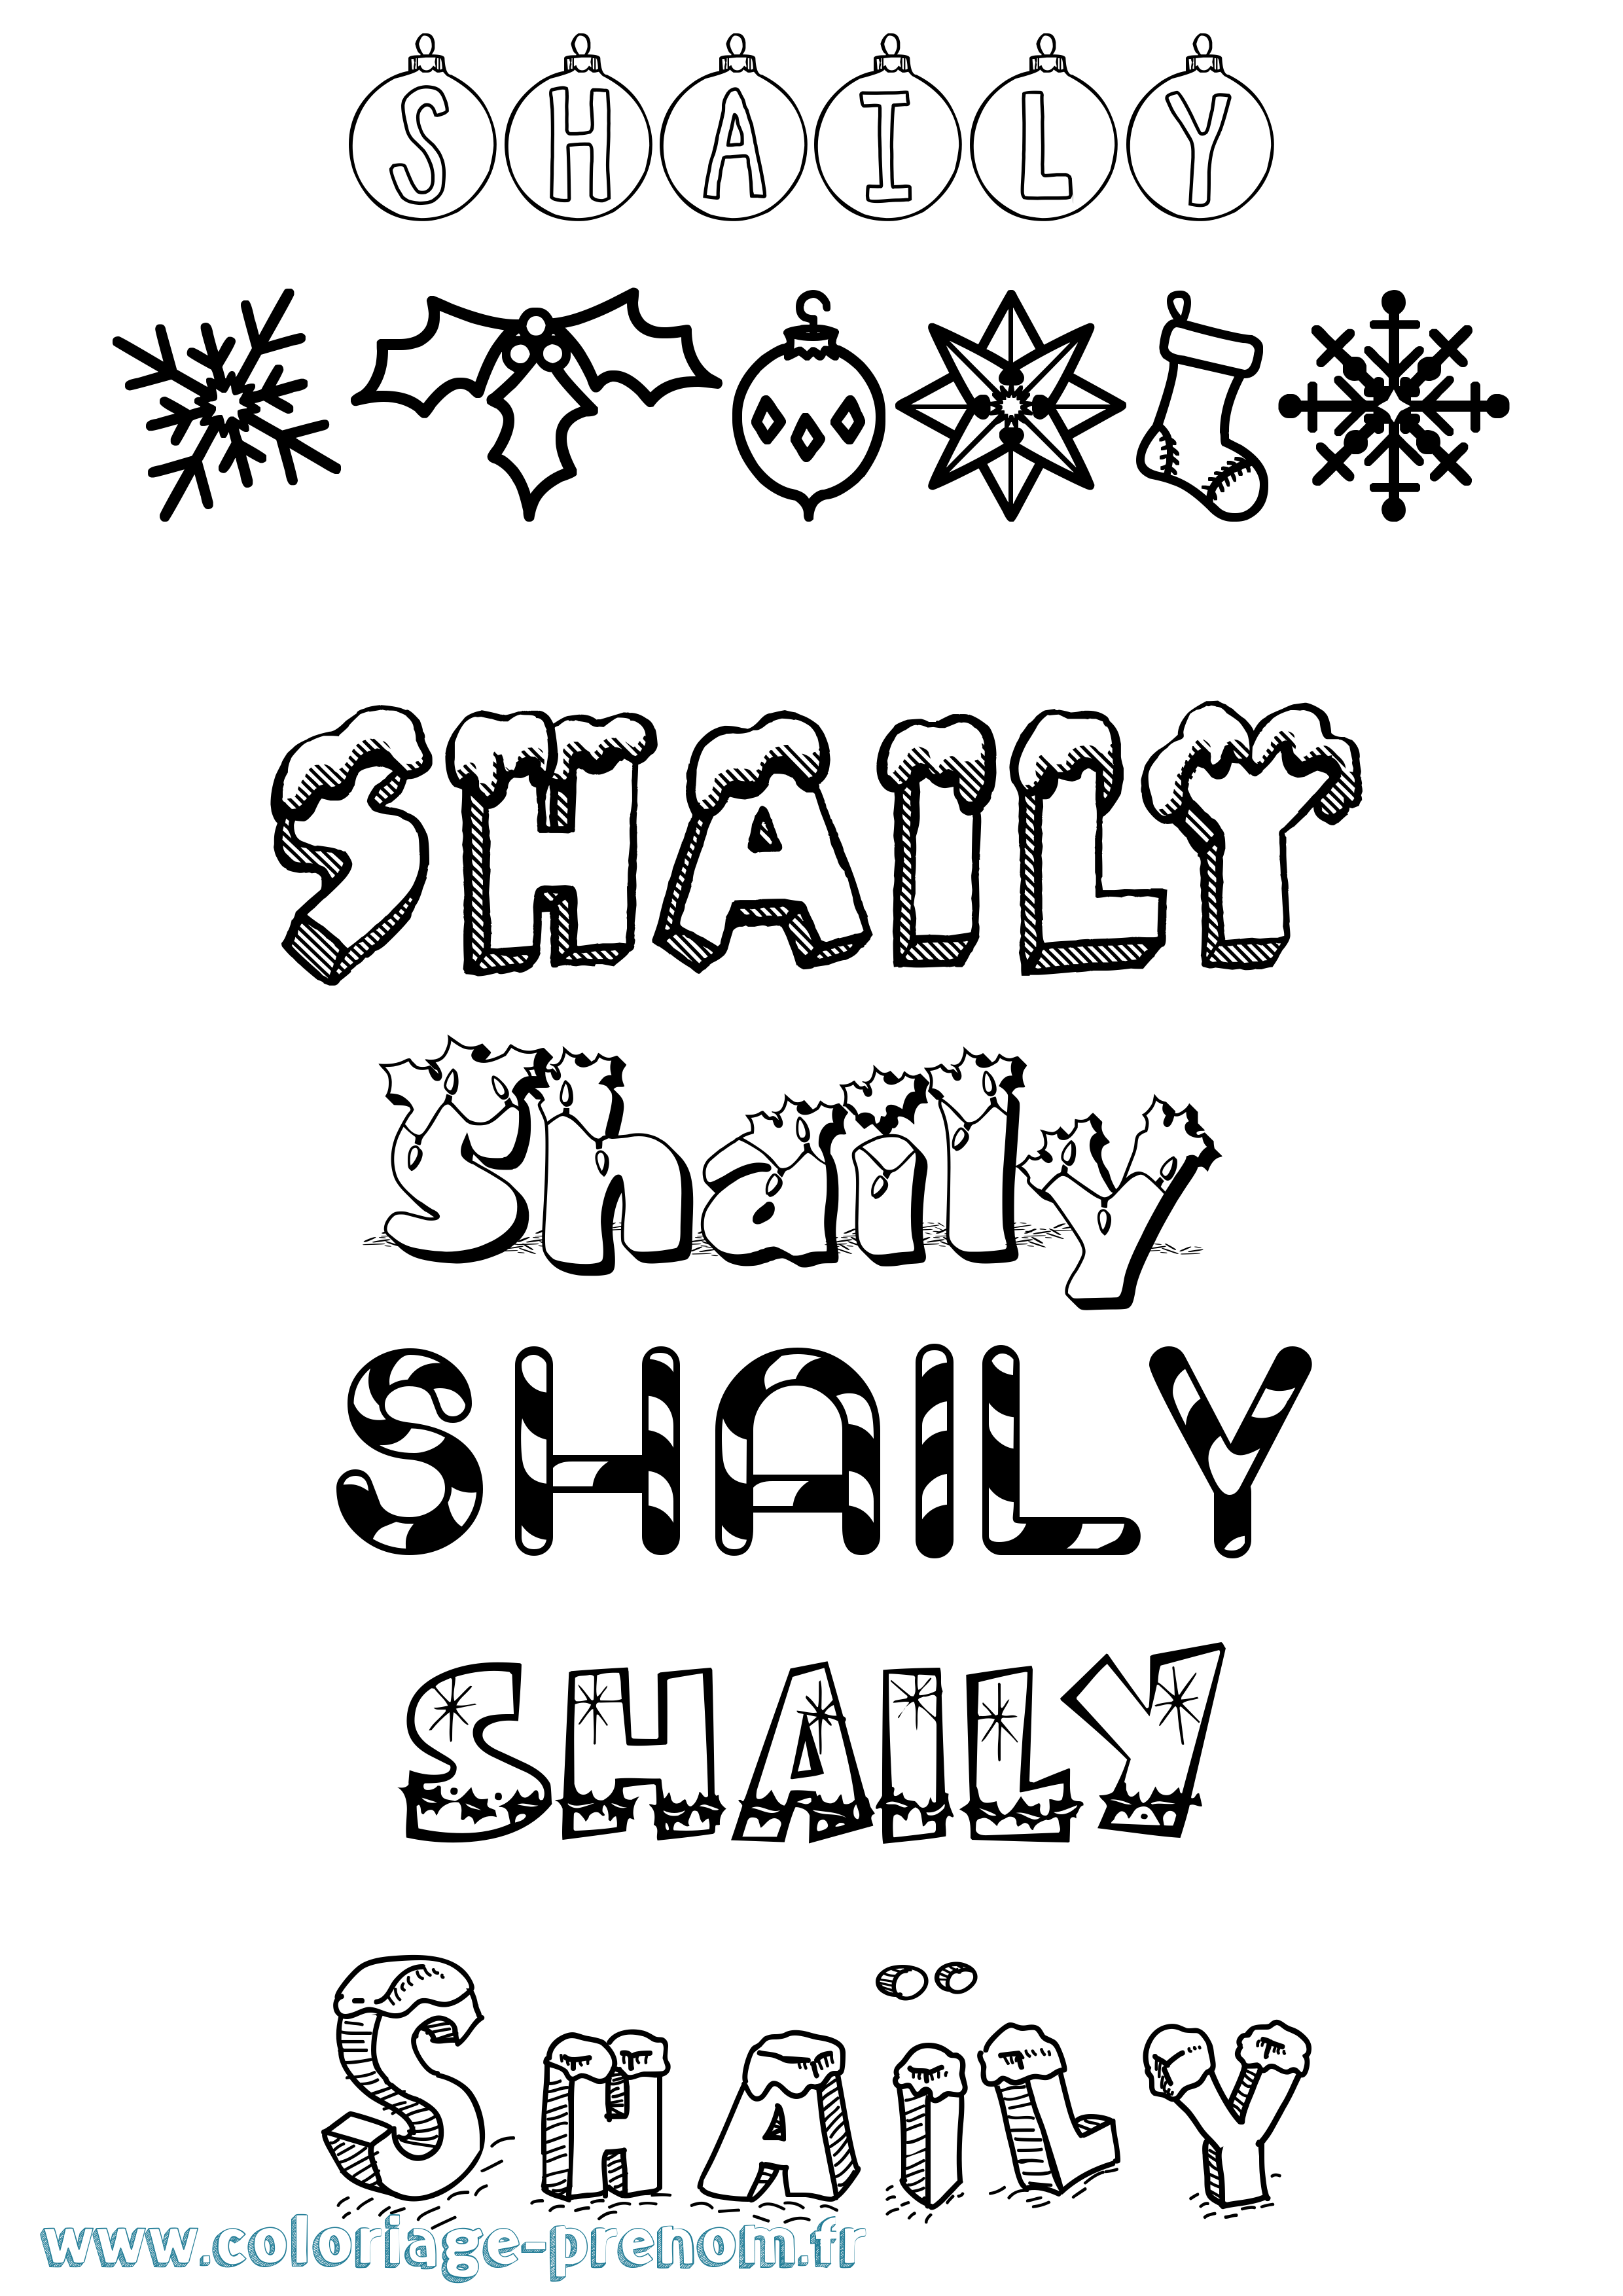 Coloriage prénom Shaïly